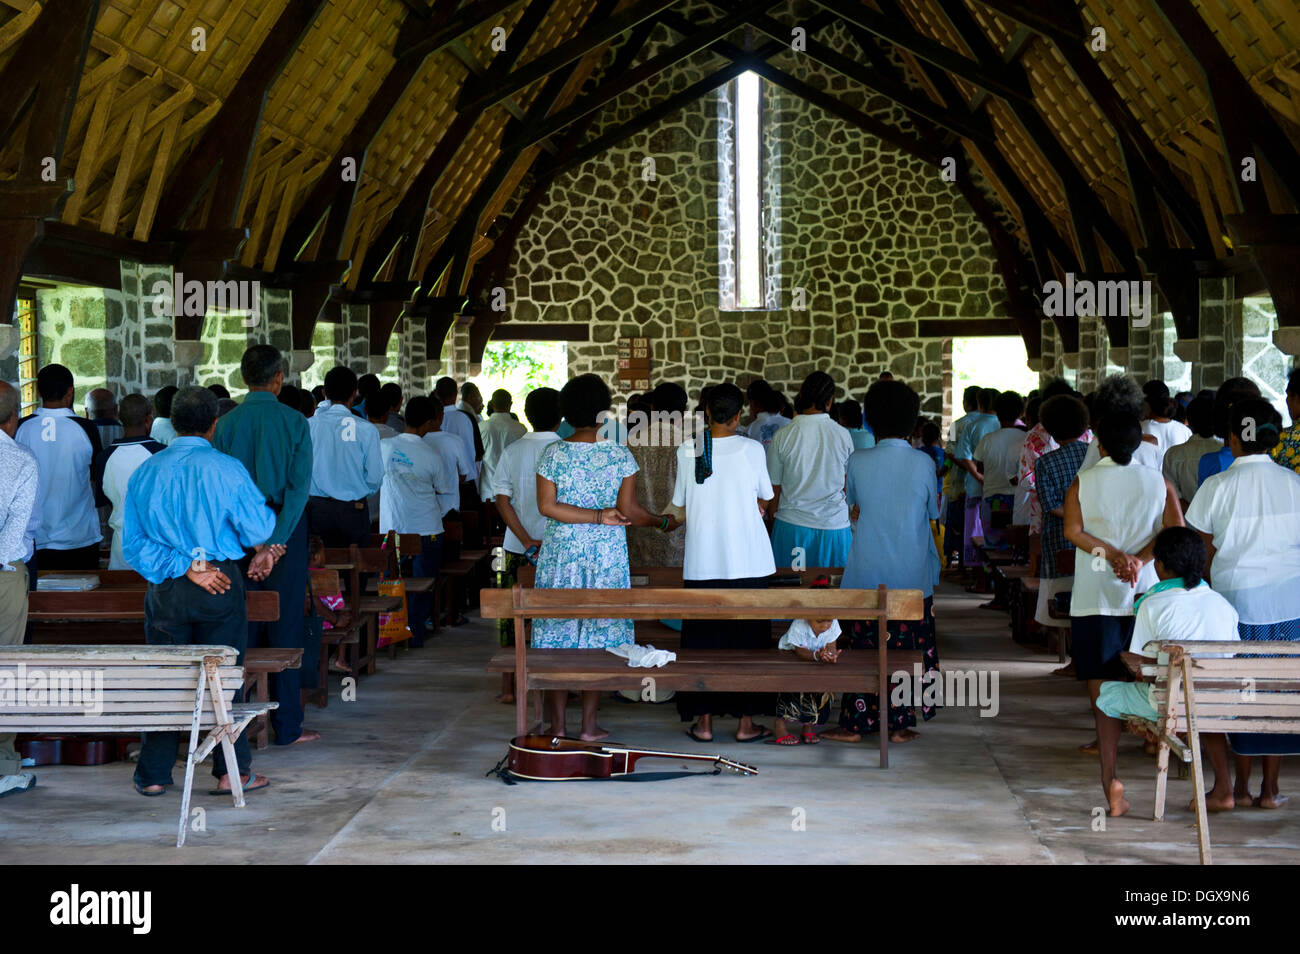 Croyants assister à une messe dans une église de pierre, Insel, Kvato Alotau, Papouasie Nouvelle Guinée Banque D'Images